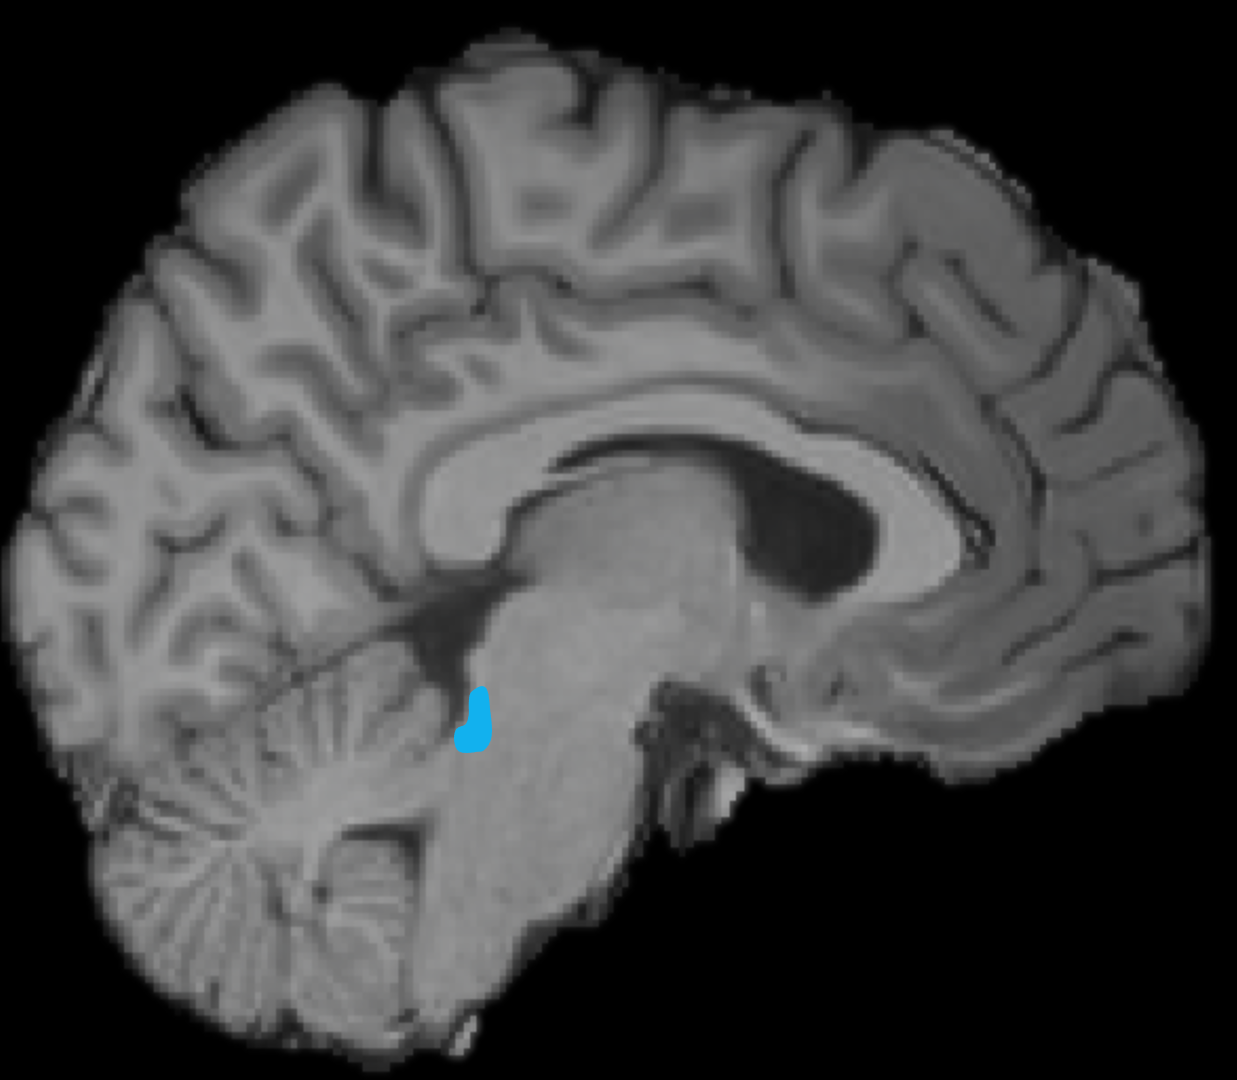 Vergr?sserte Ansicht: MRI von einem Gehirn, eine kleine Fläche (in der unteren Hirnhälfte in der Mitte) ist blau markiert